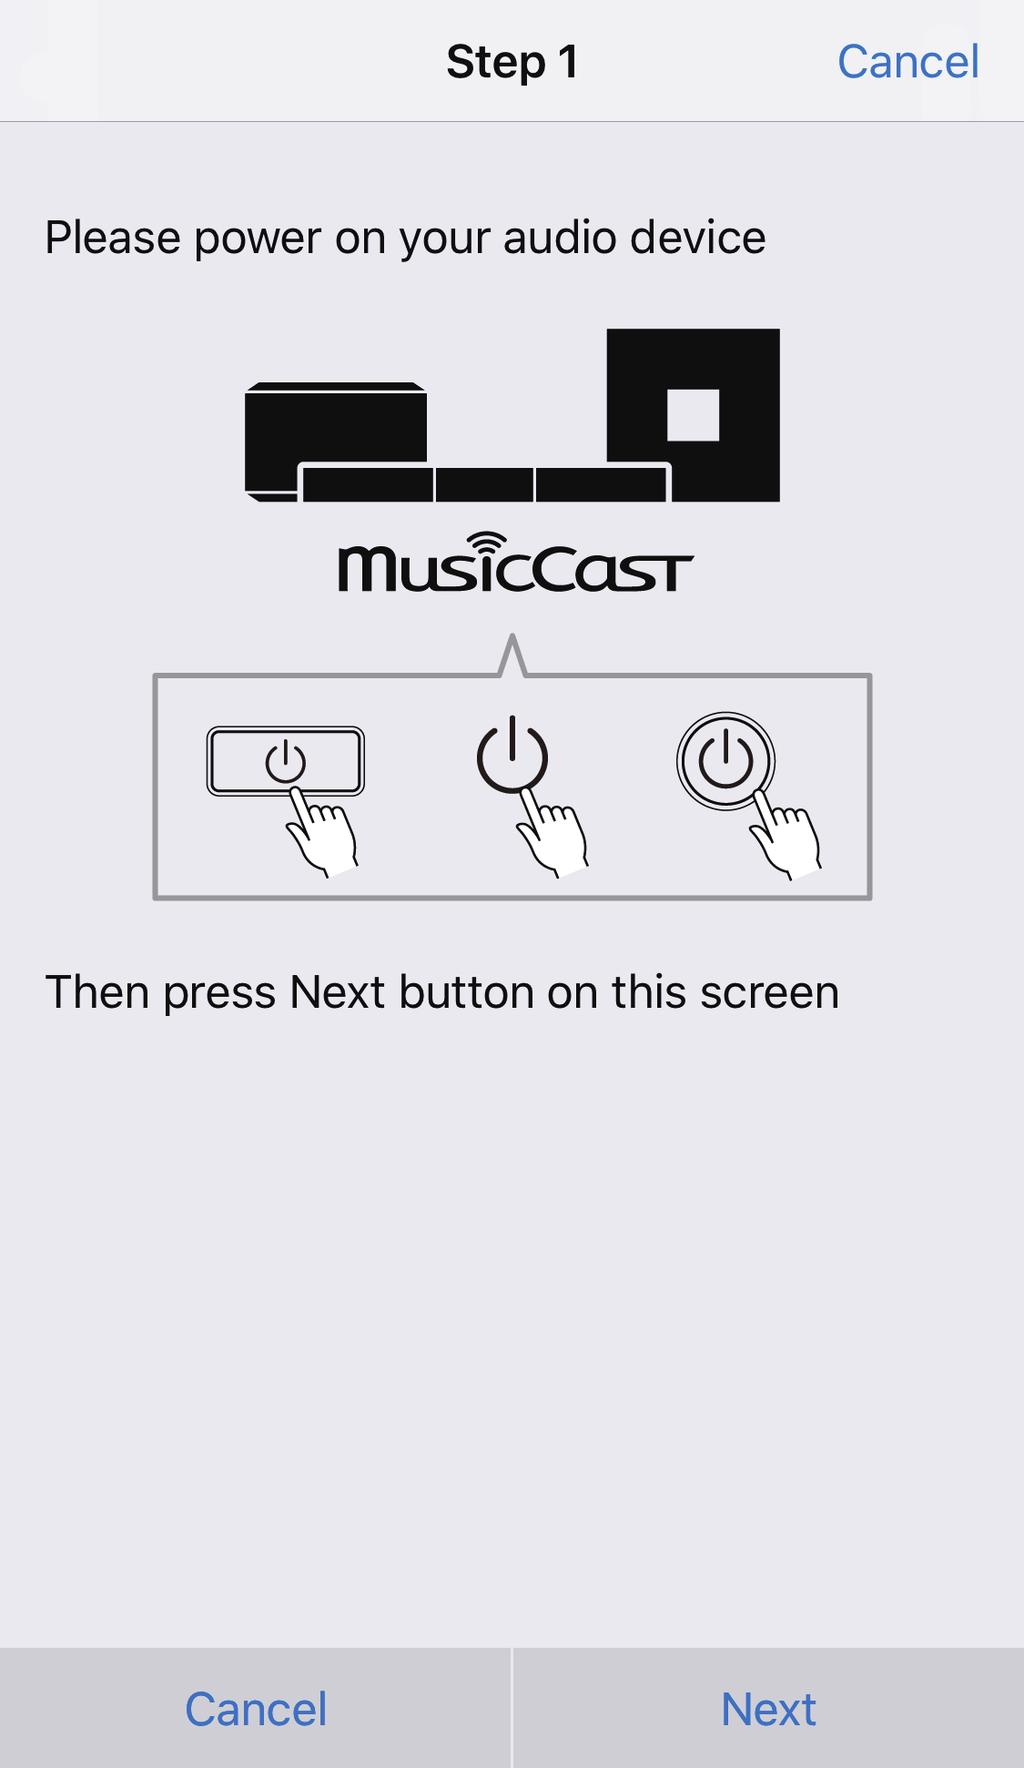 Detta avsnitt använder skärmbilder från MusicCast CONTROLLER-appen som visas på engelska på en iphone som exempel.